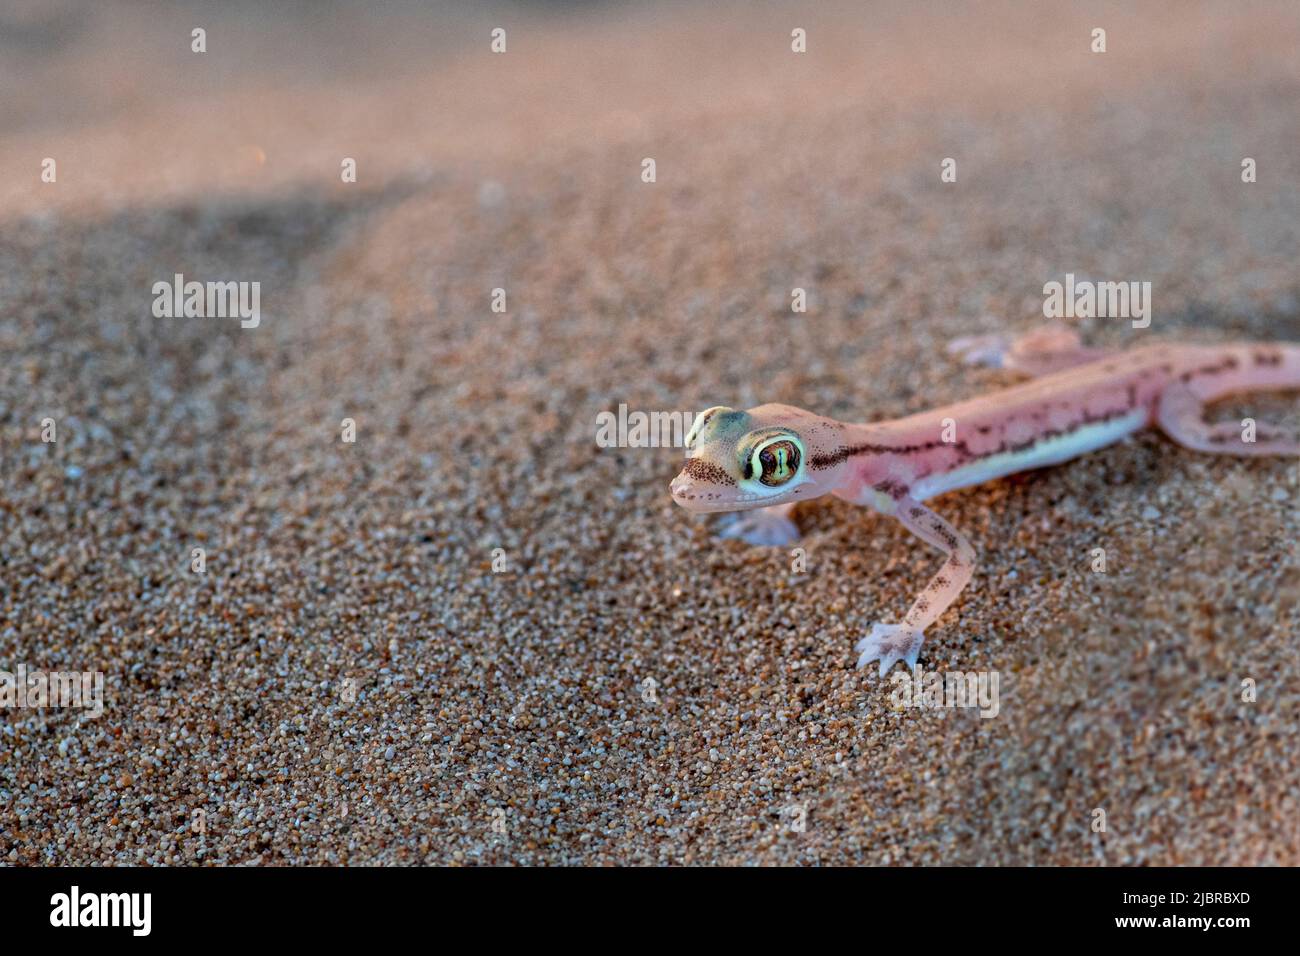 Gecko arabo a breve distanza o gecko arabo di sabbia guardando la fotocamera, Dubai Emirates deserto, Emirati Arabi Uniti, Emirati Arabi Uniti, penisola arabica Foto Stock